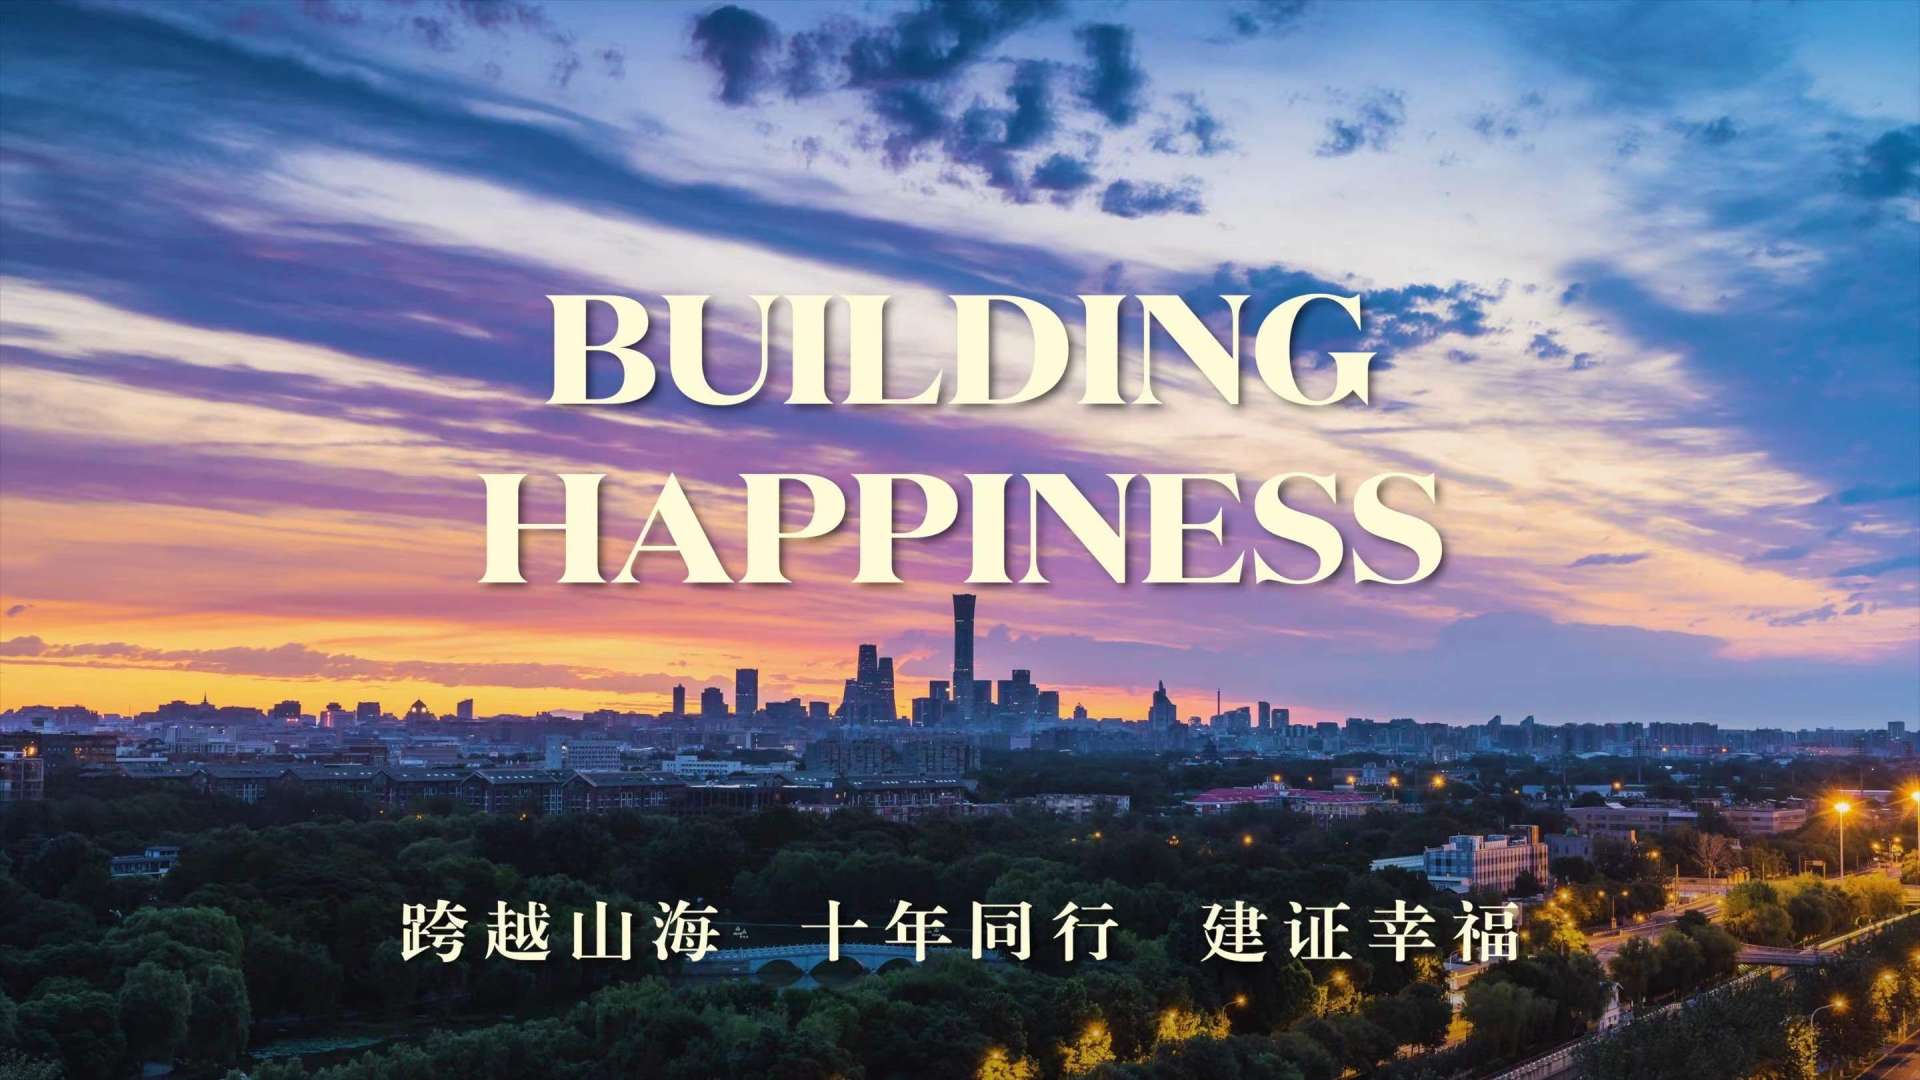 中国建筑集团海外宣传片